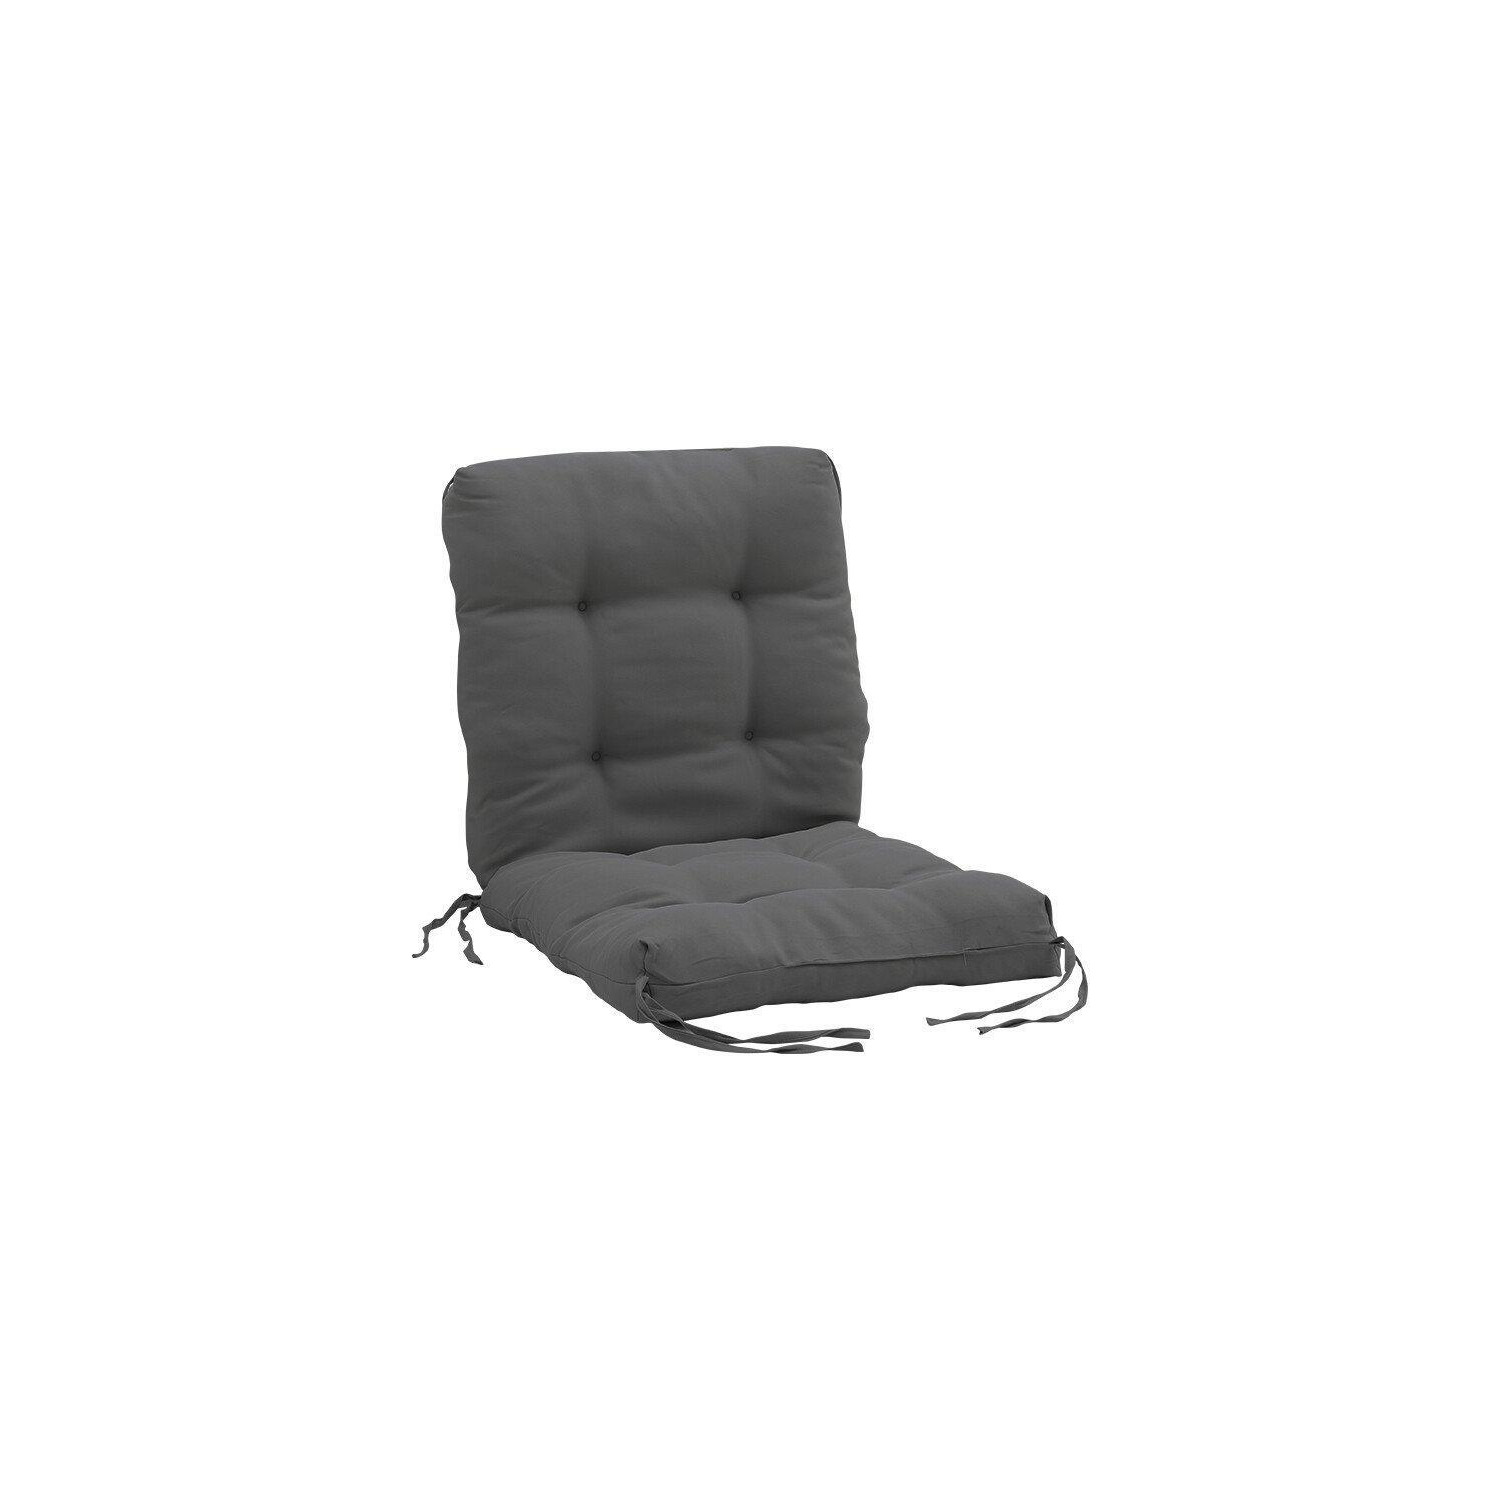 110cm x 50cm Lawn Chair Garden Seat Cushion - image 1